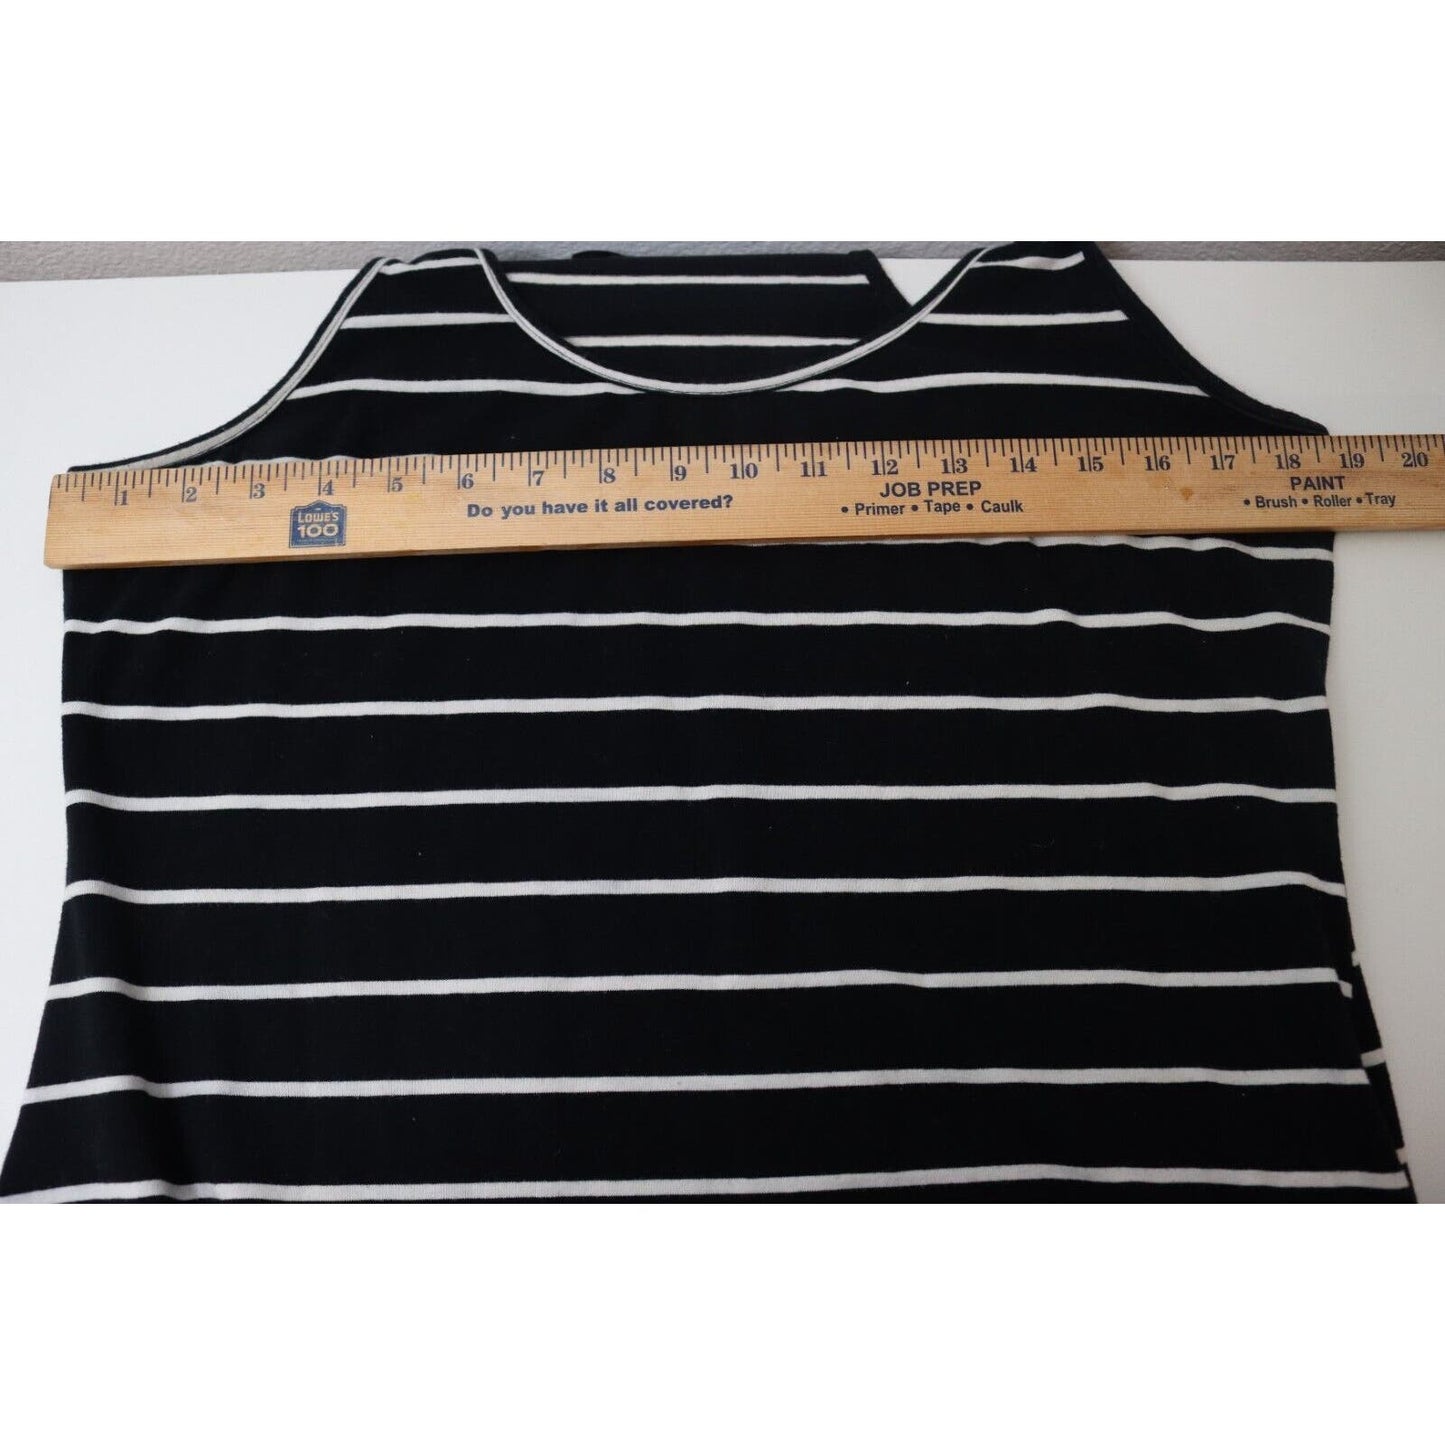 Zanzea Stripe Maxi Dress Size 12 Sleeveless